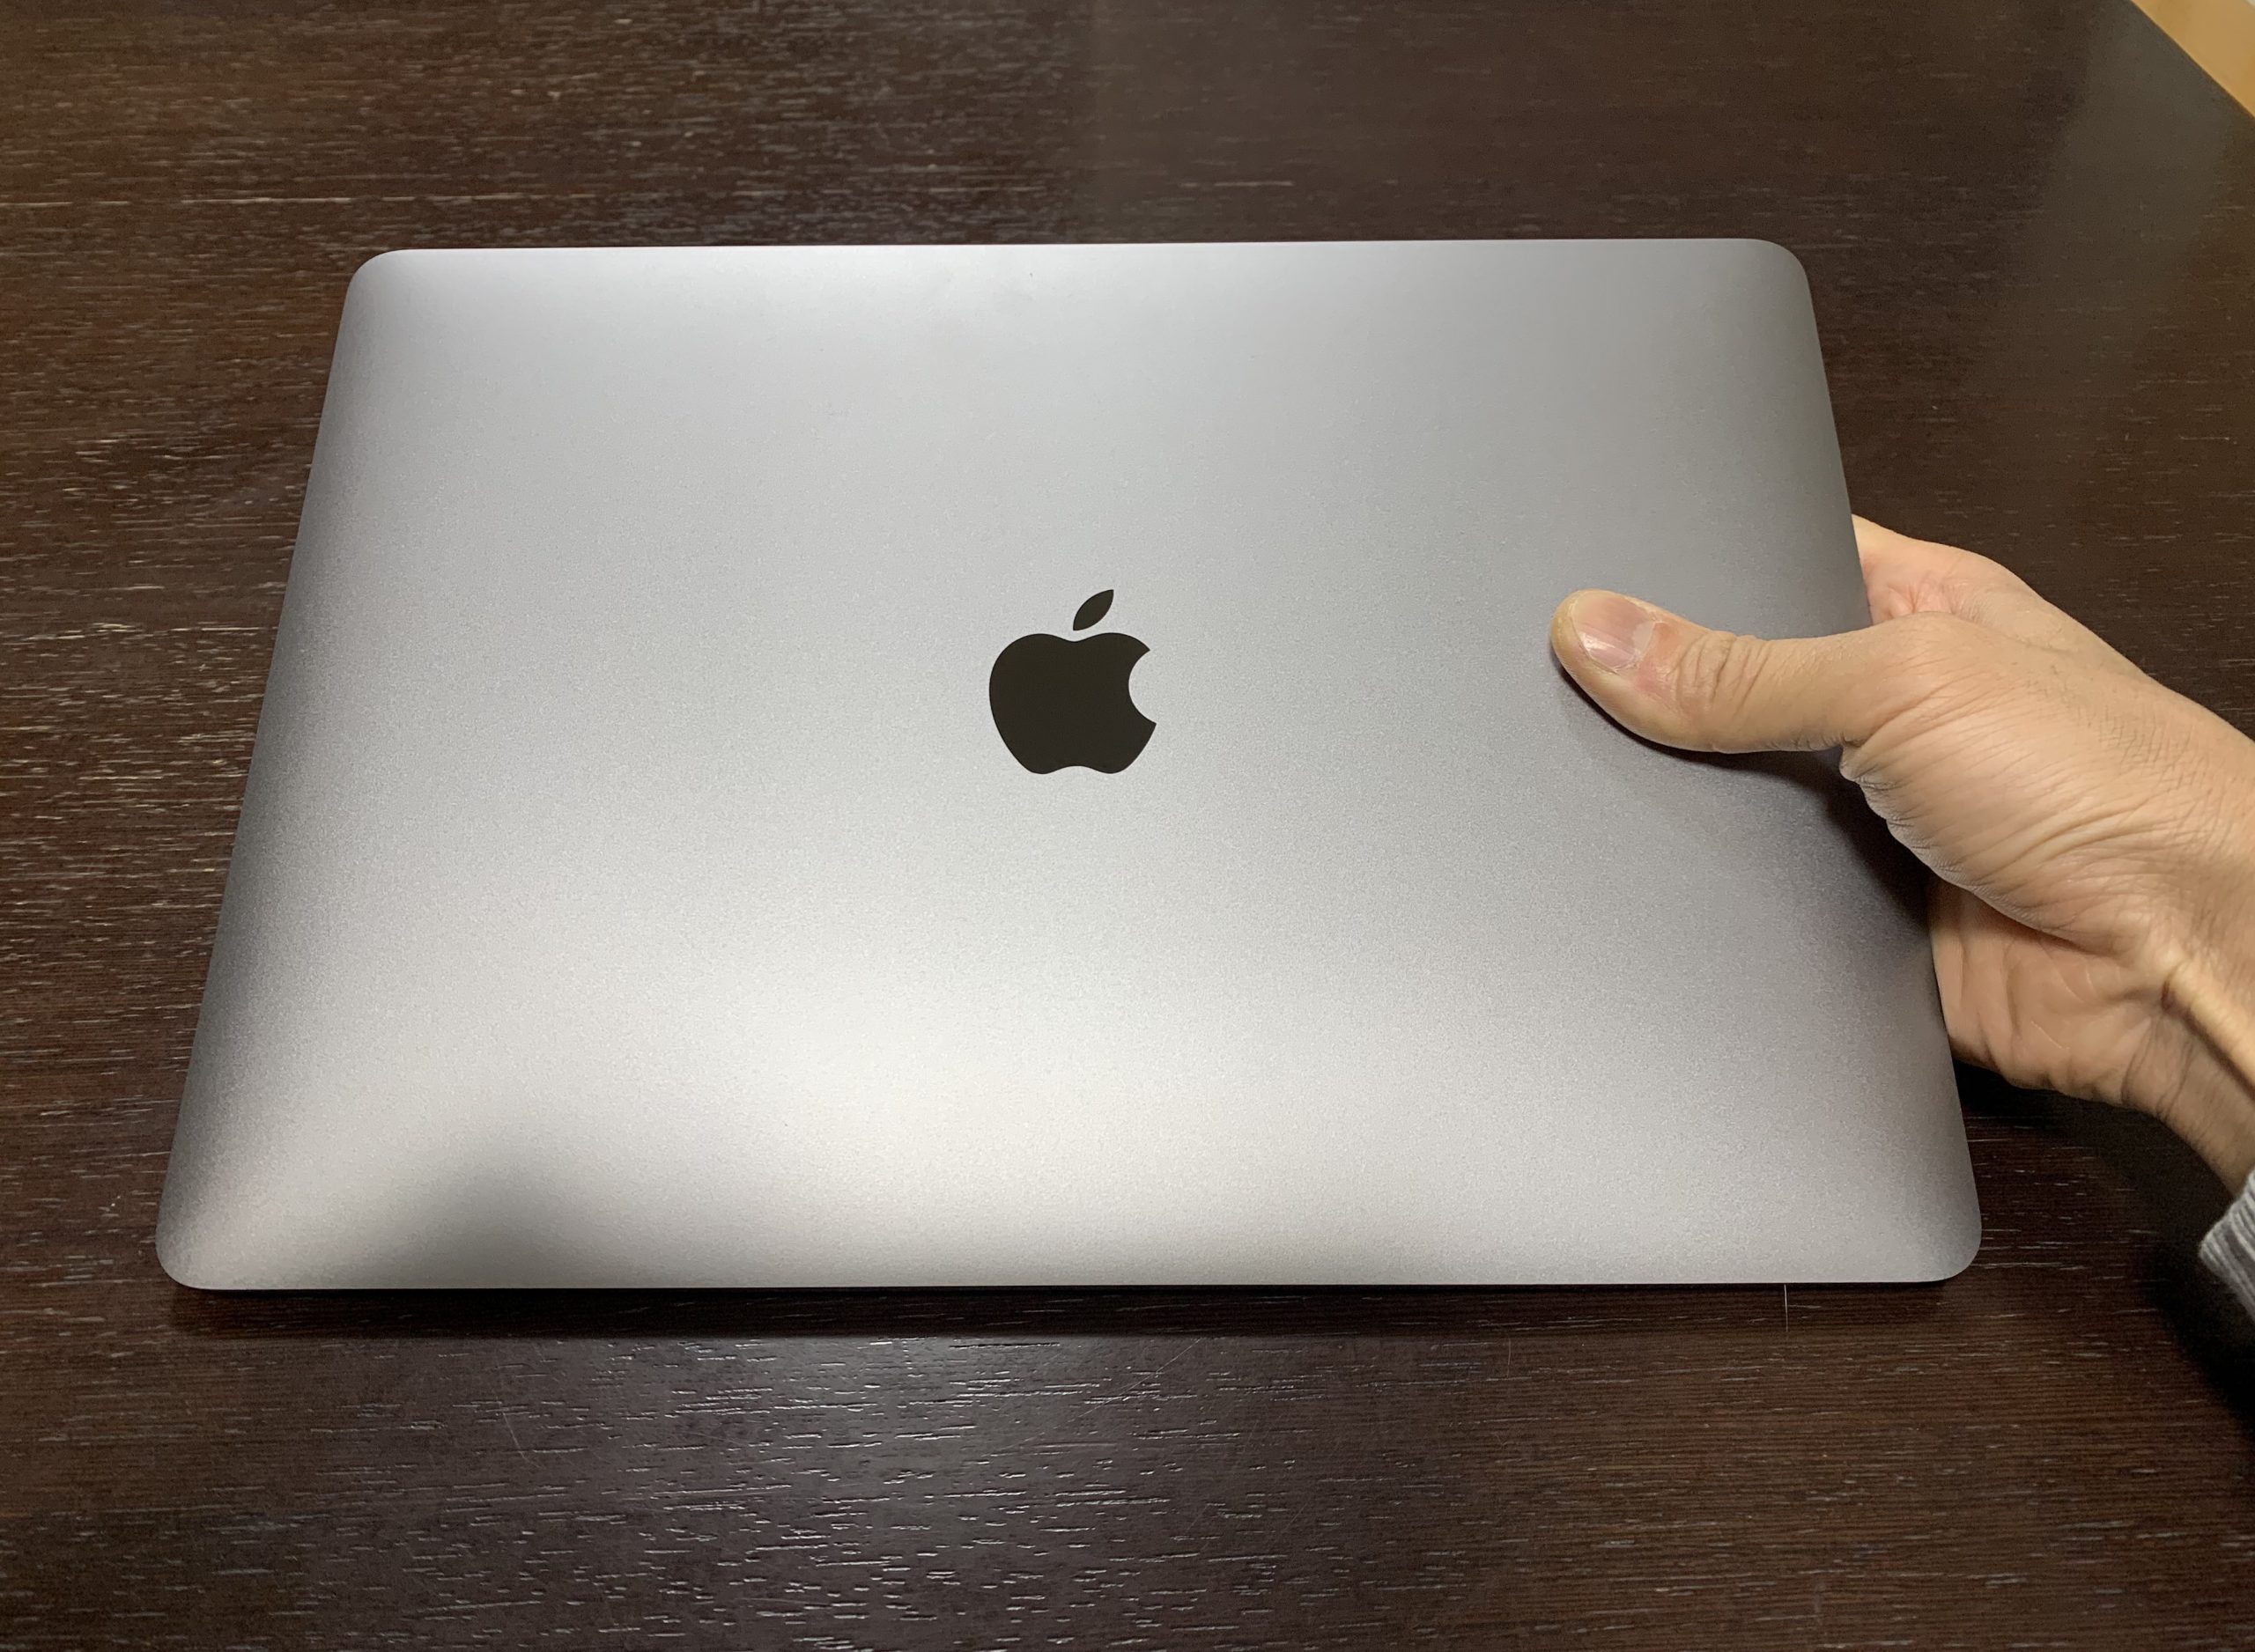 買ってよかった！MacBook Pro 2019 13インチ レビュー | outputブログ